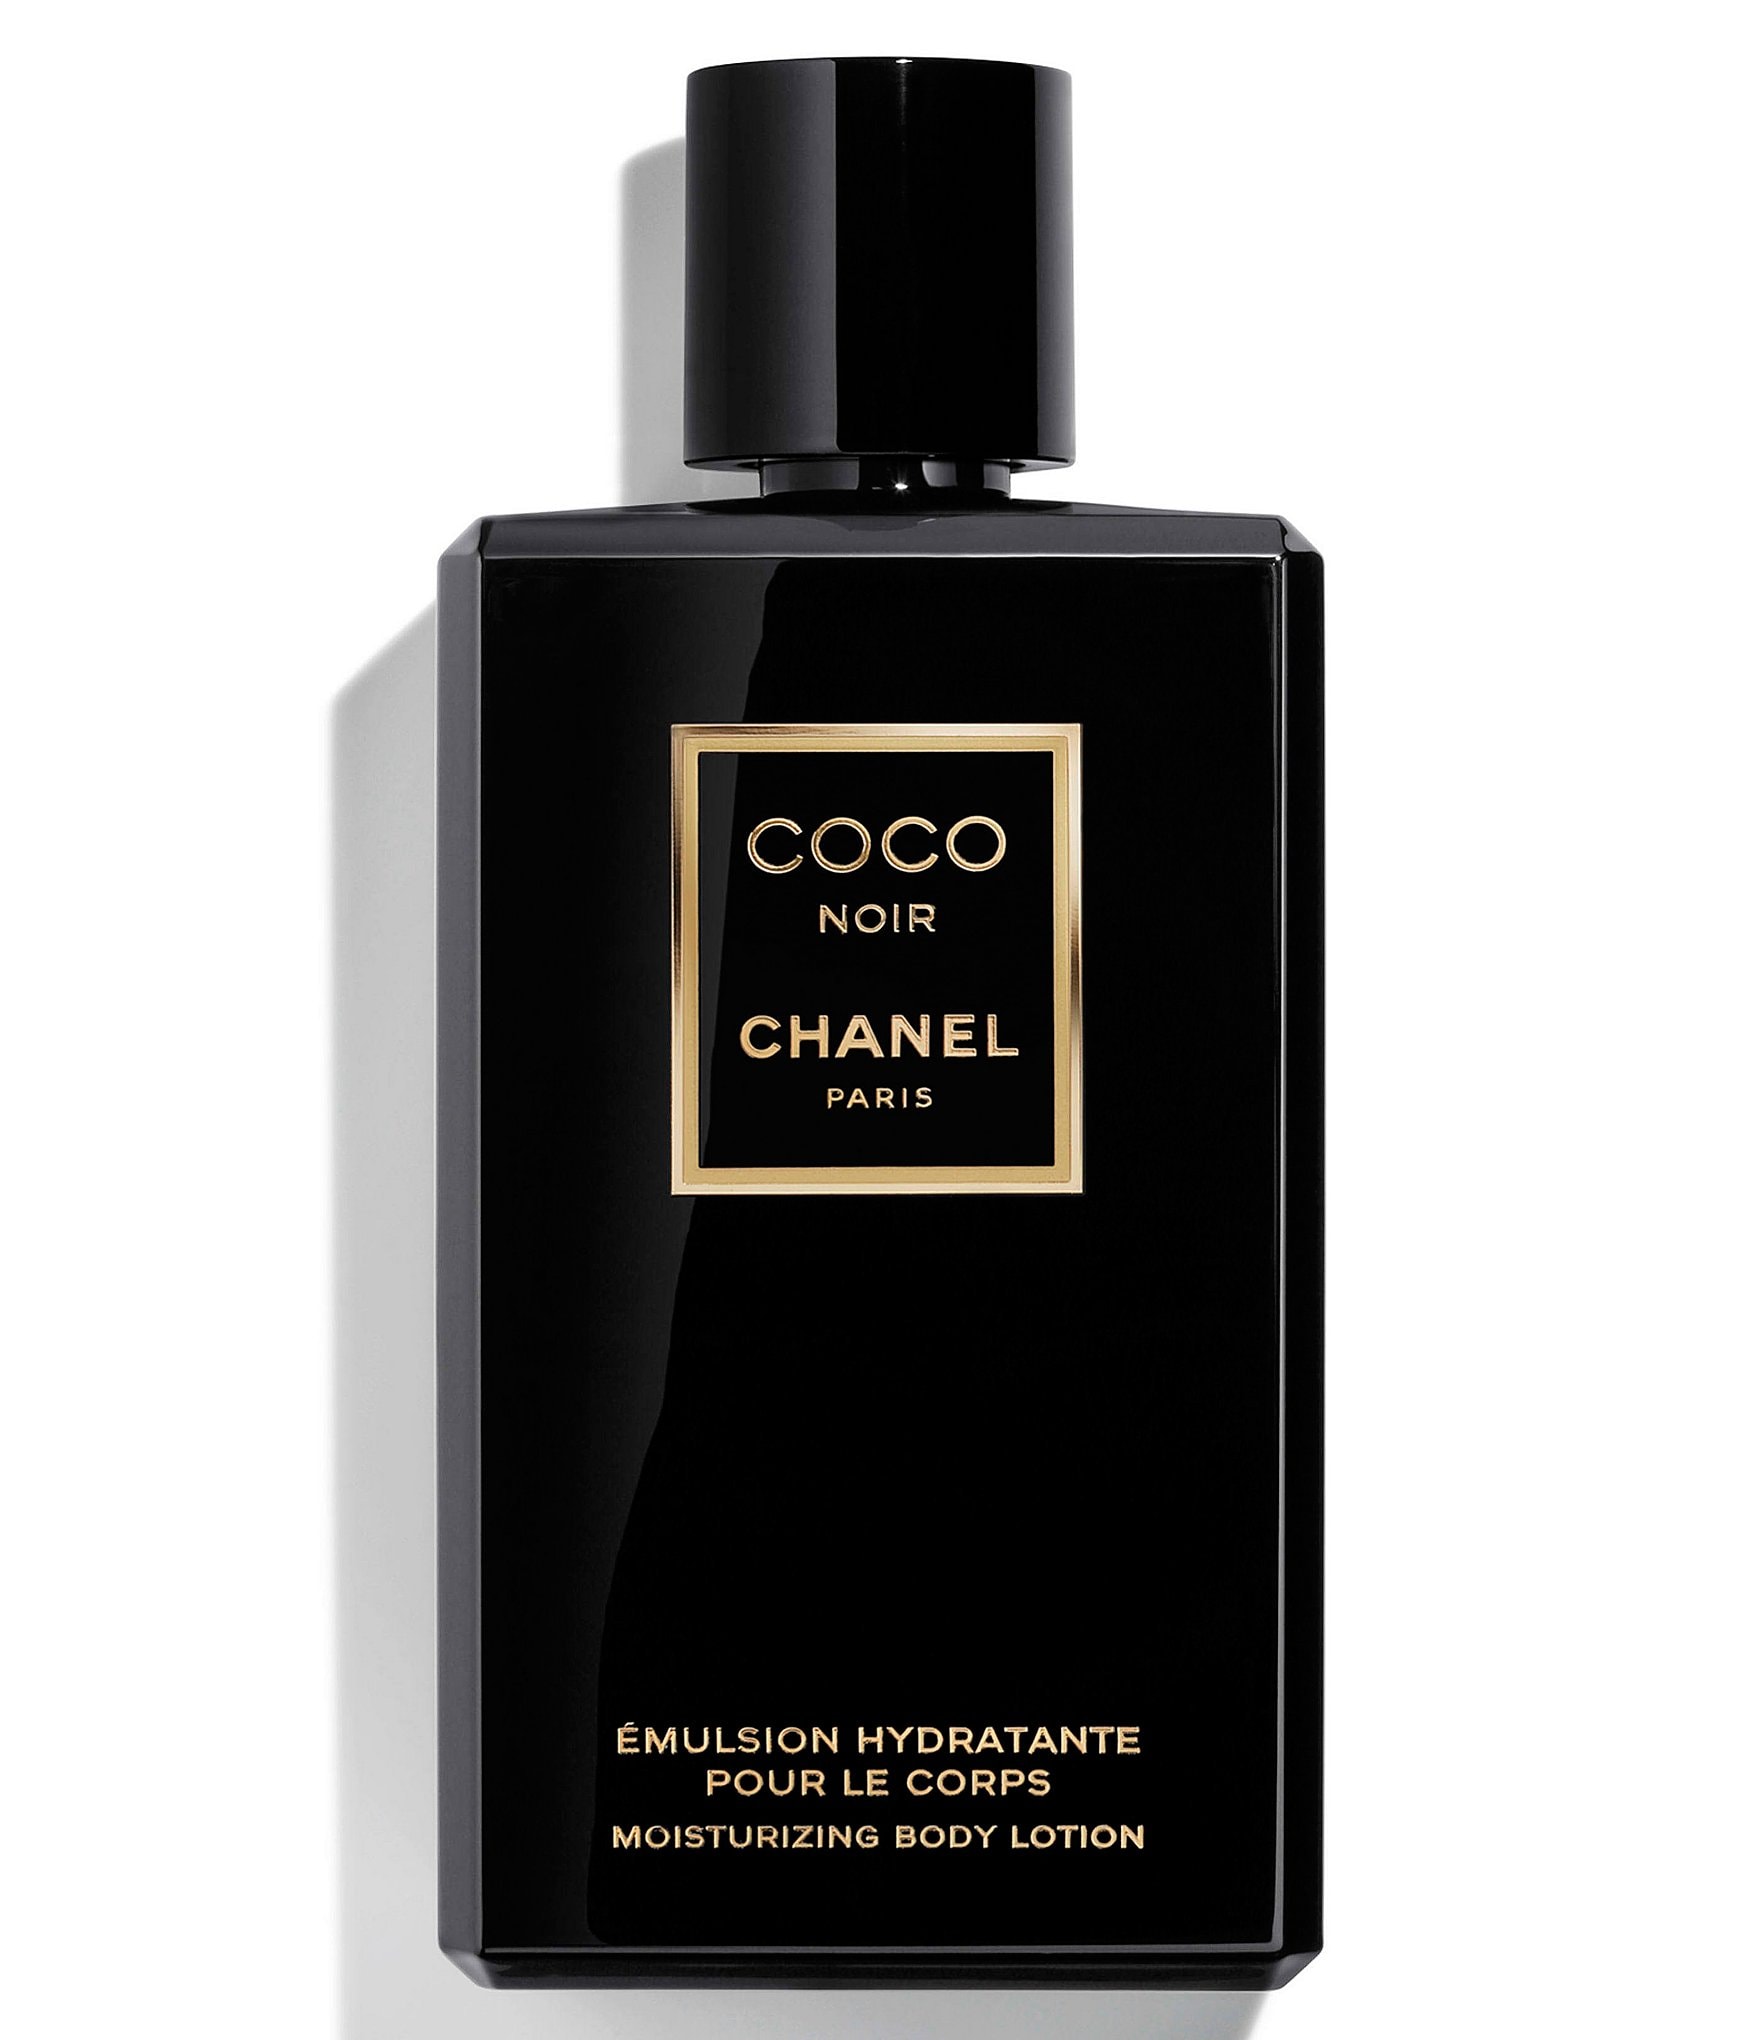 Chanel Bath & Body Products